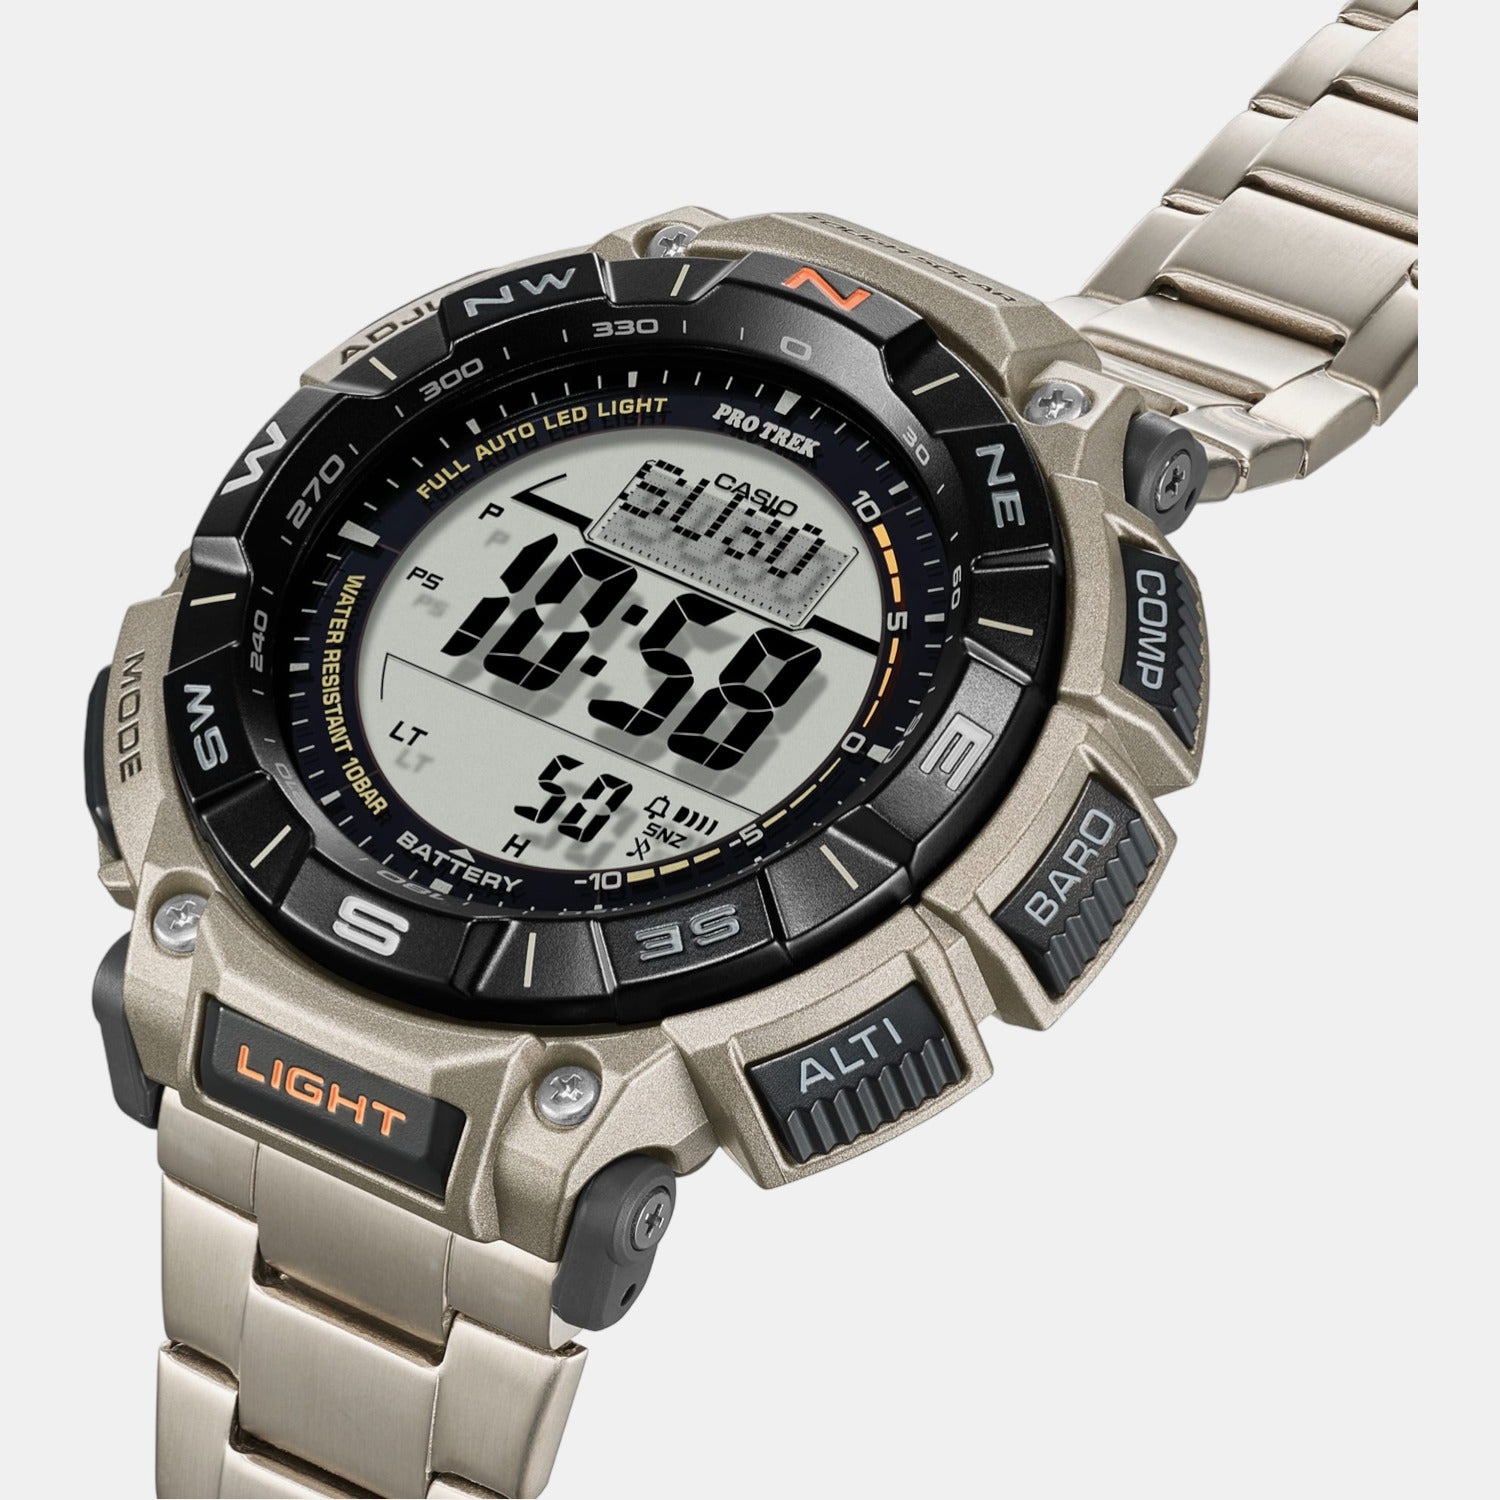 Casio Pro Trek PRW-6900Y-3ER Watch • EAN: 4549526334887 • Mastersintime.com